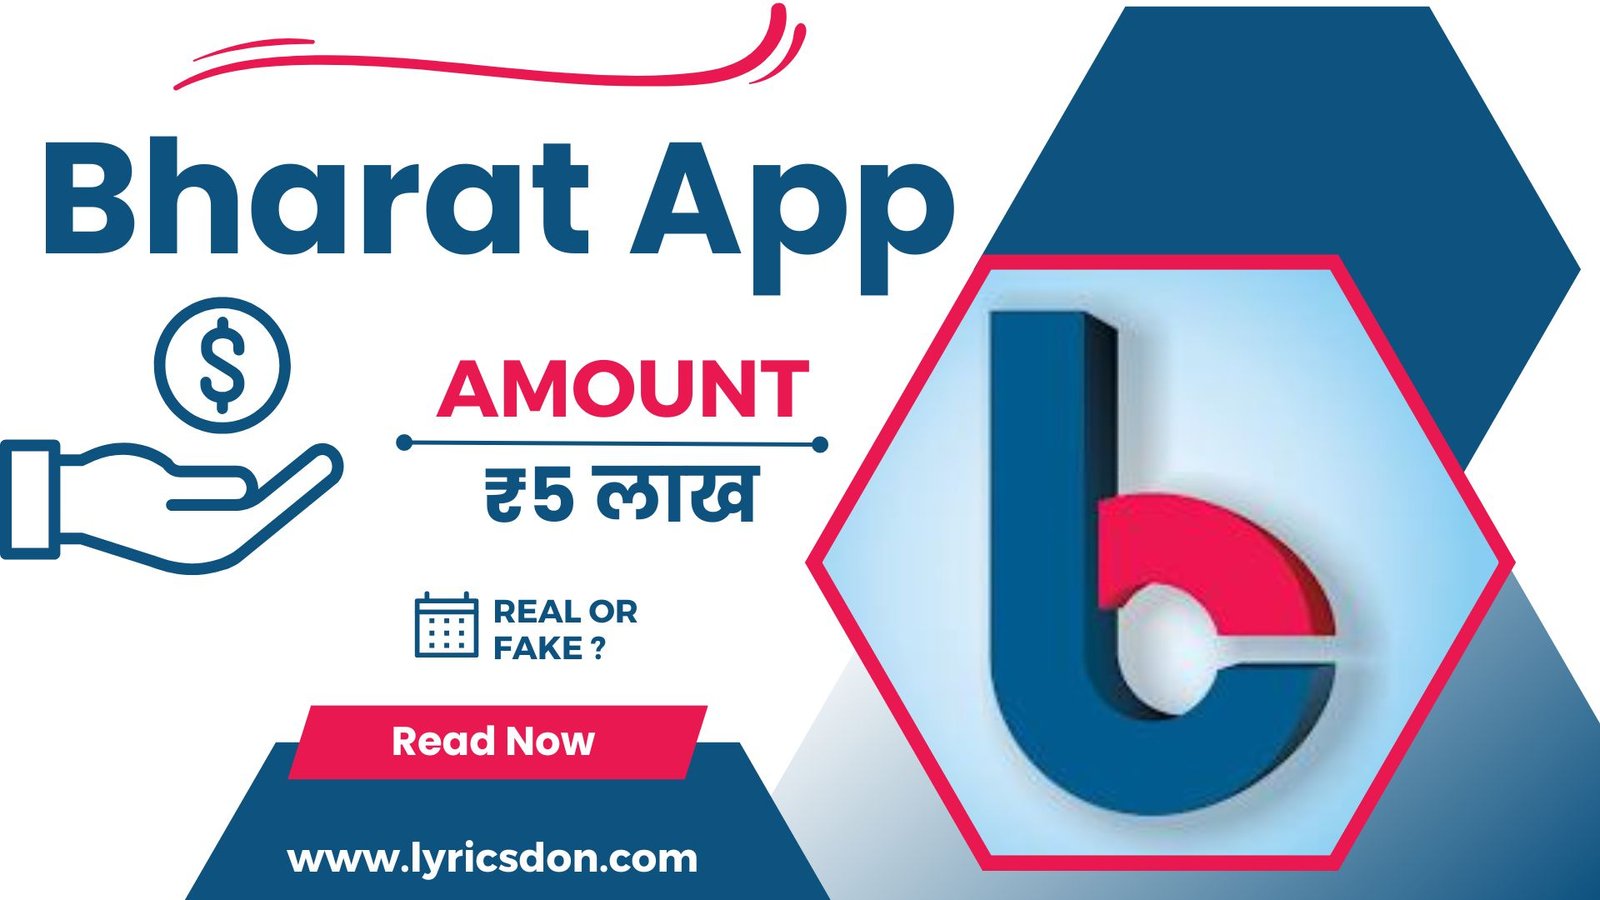 Bharat Loan App Loan Amount